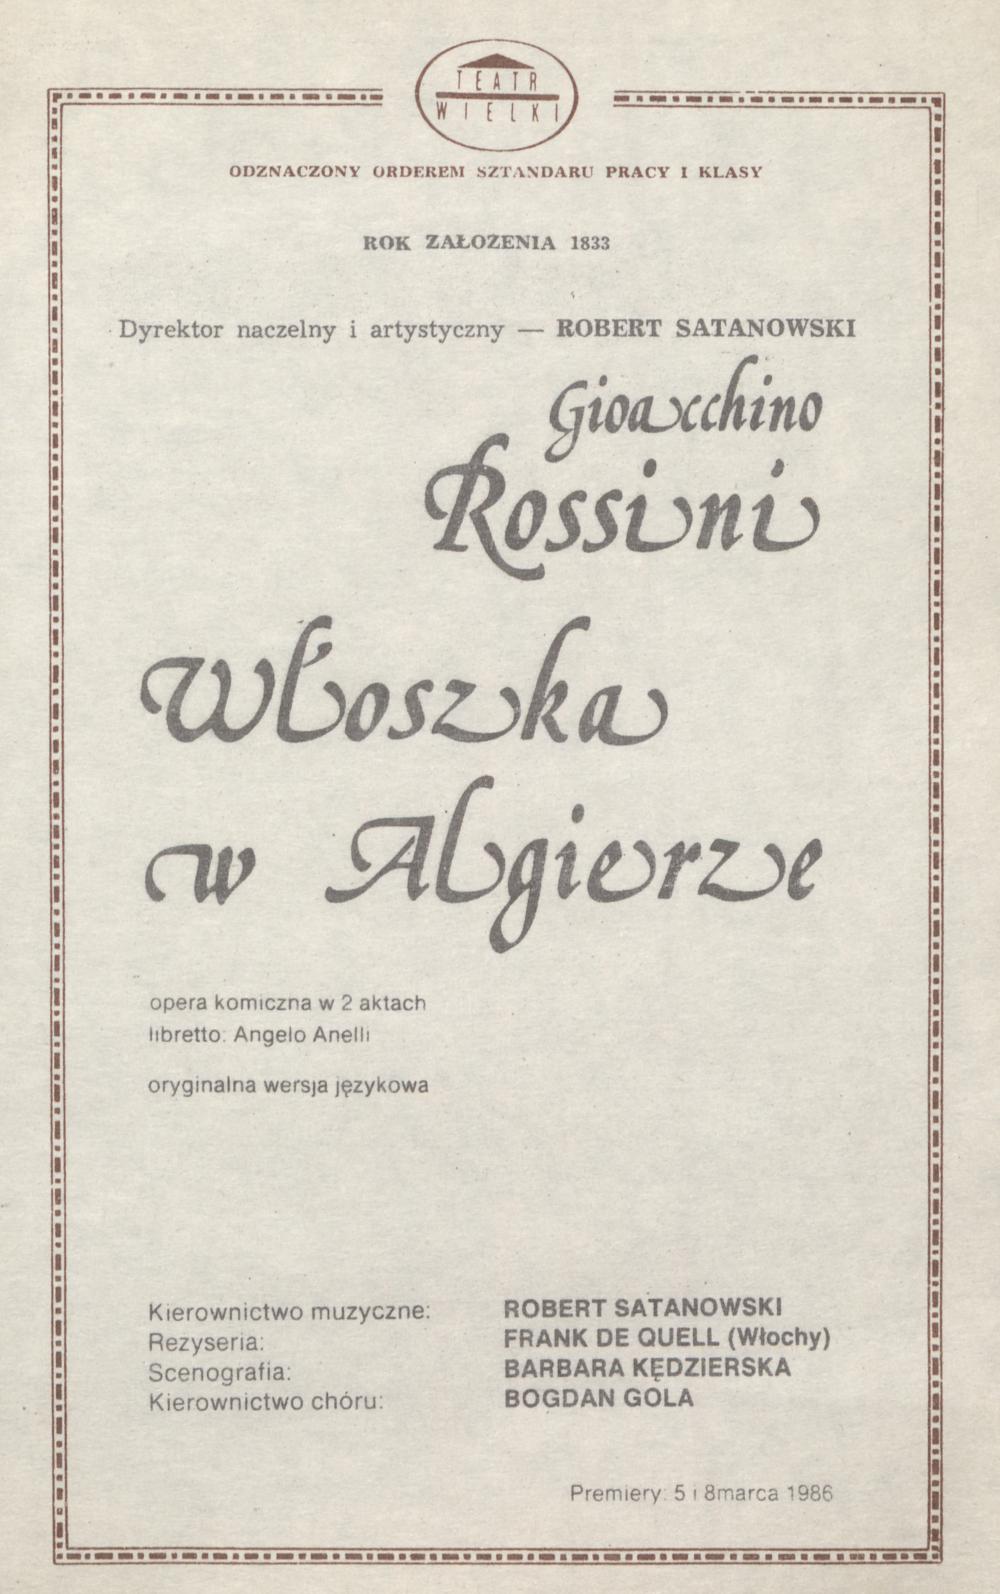 Wkładka obsadowa „Włoszka w Algierze” Gioachino Rossini 02-04-1986